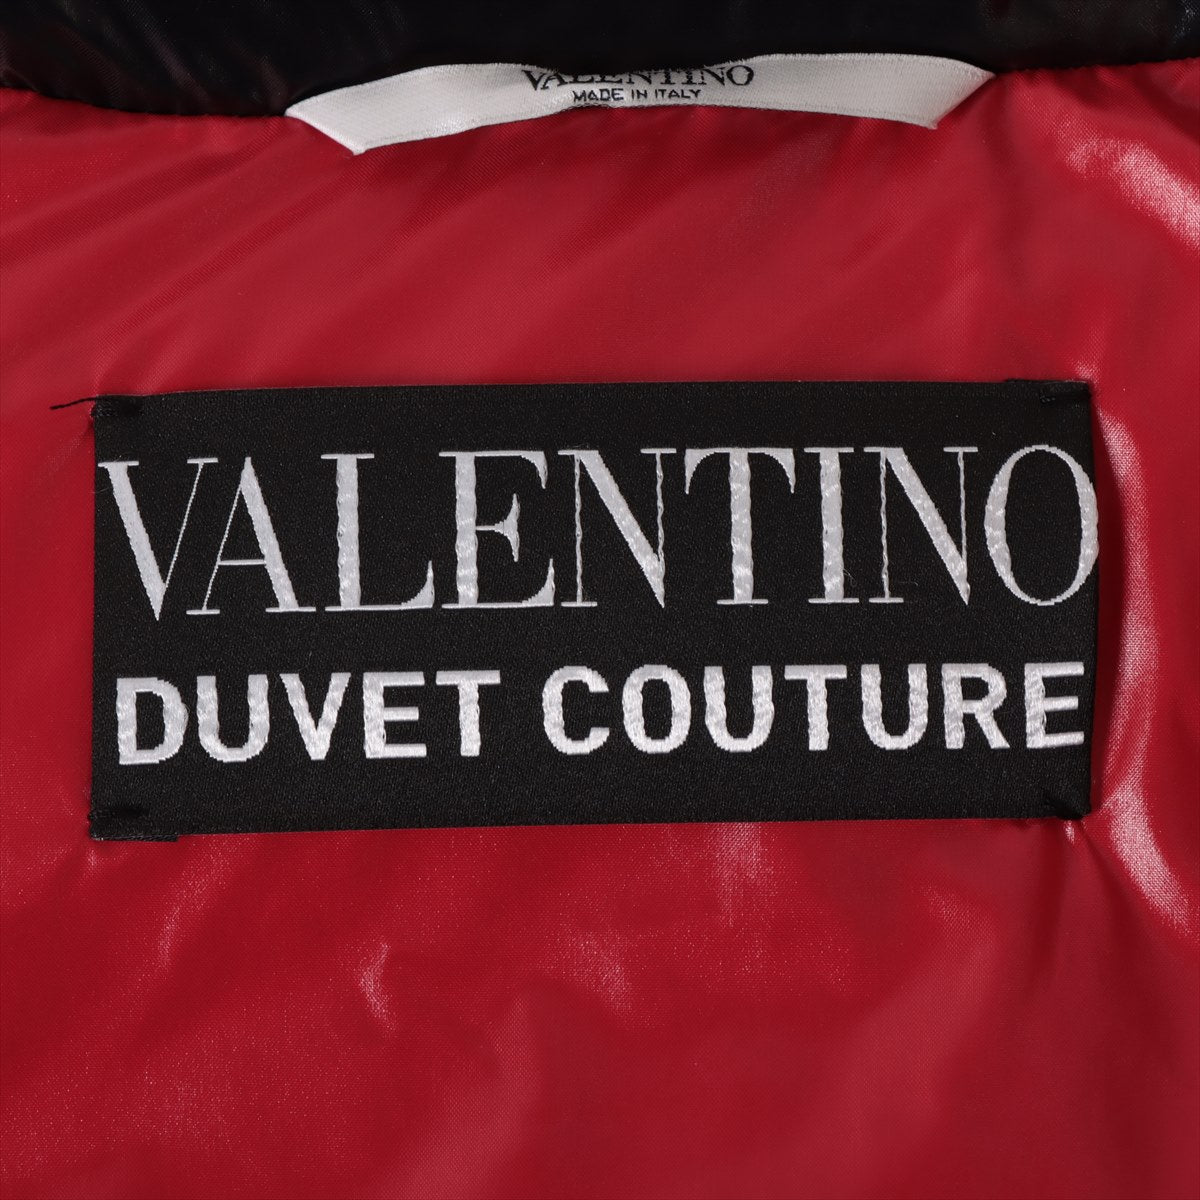 ヴァレンティノ ポリエステル×ナイロン ダウンジャケット 40 レディース ブラック×レッド  DUVET COUTURE 袖ワンポイント